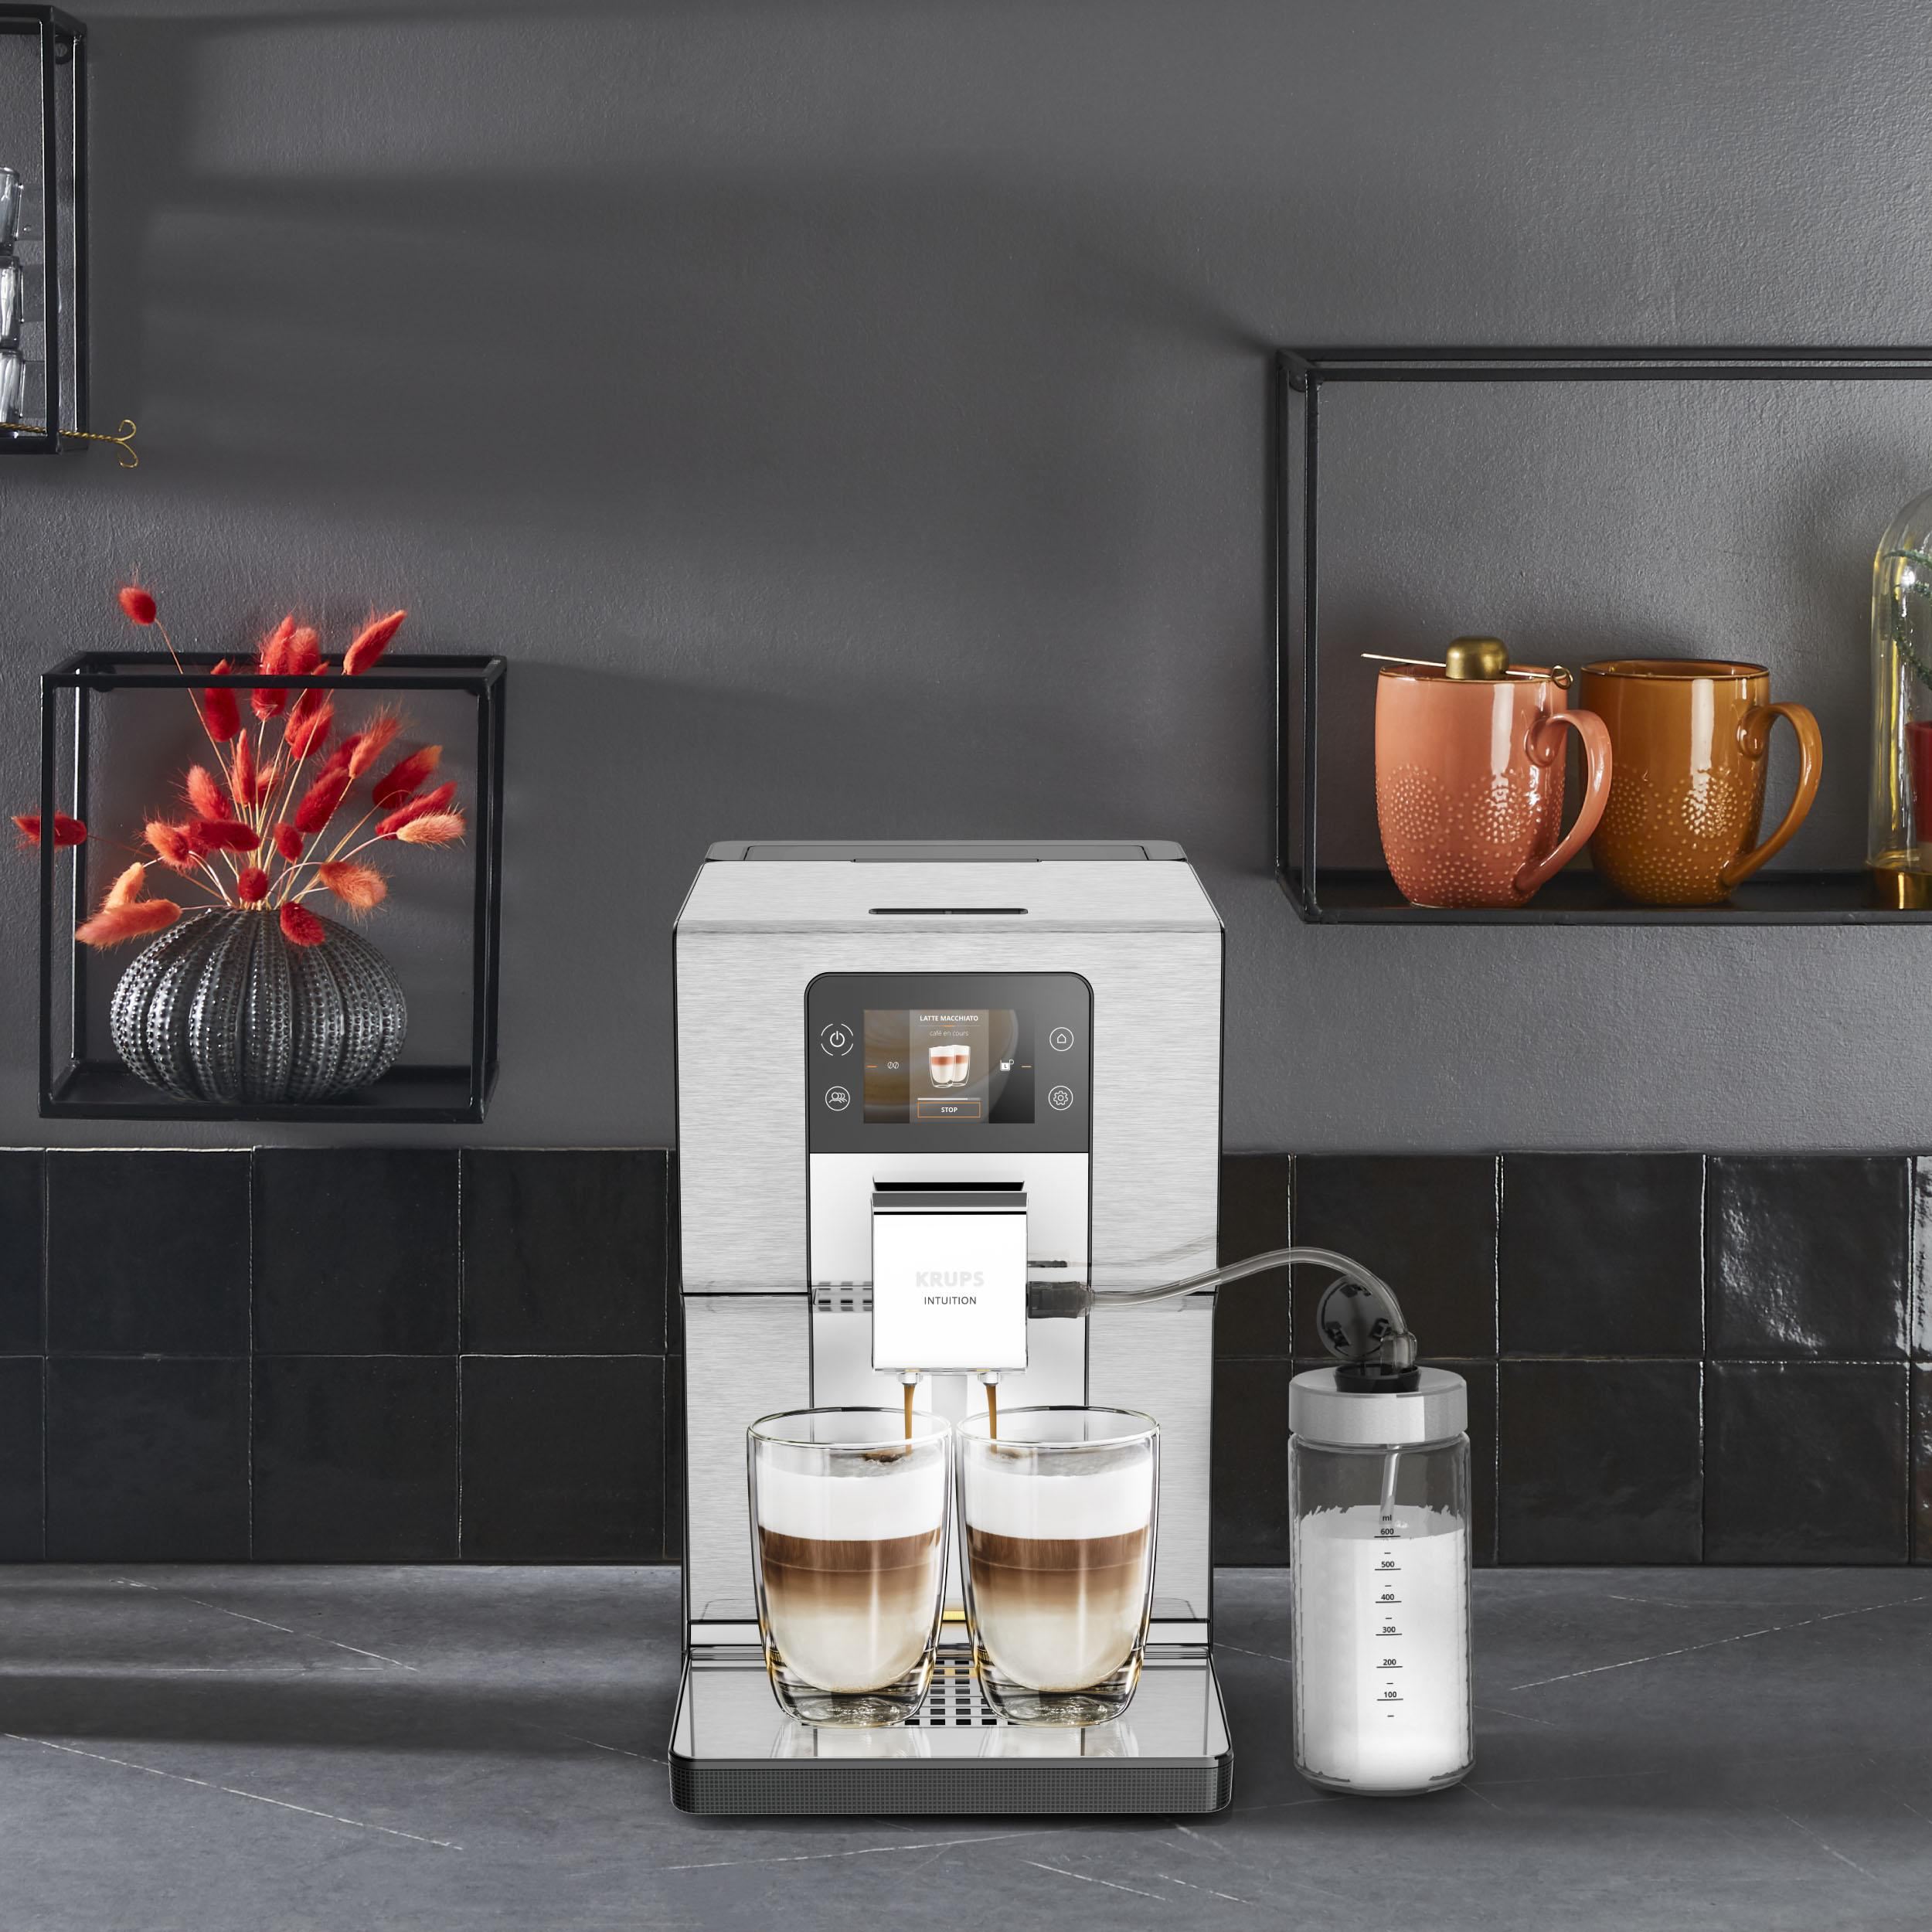 KRUPS EA877D Schwarz/Silber Experience+ Intuition Kaffeevollautomat